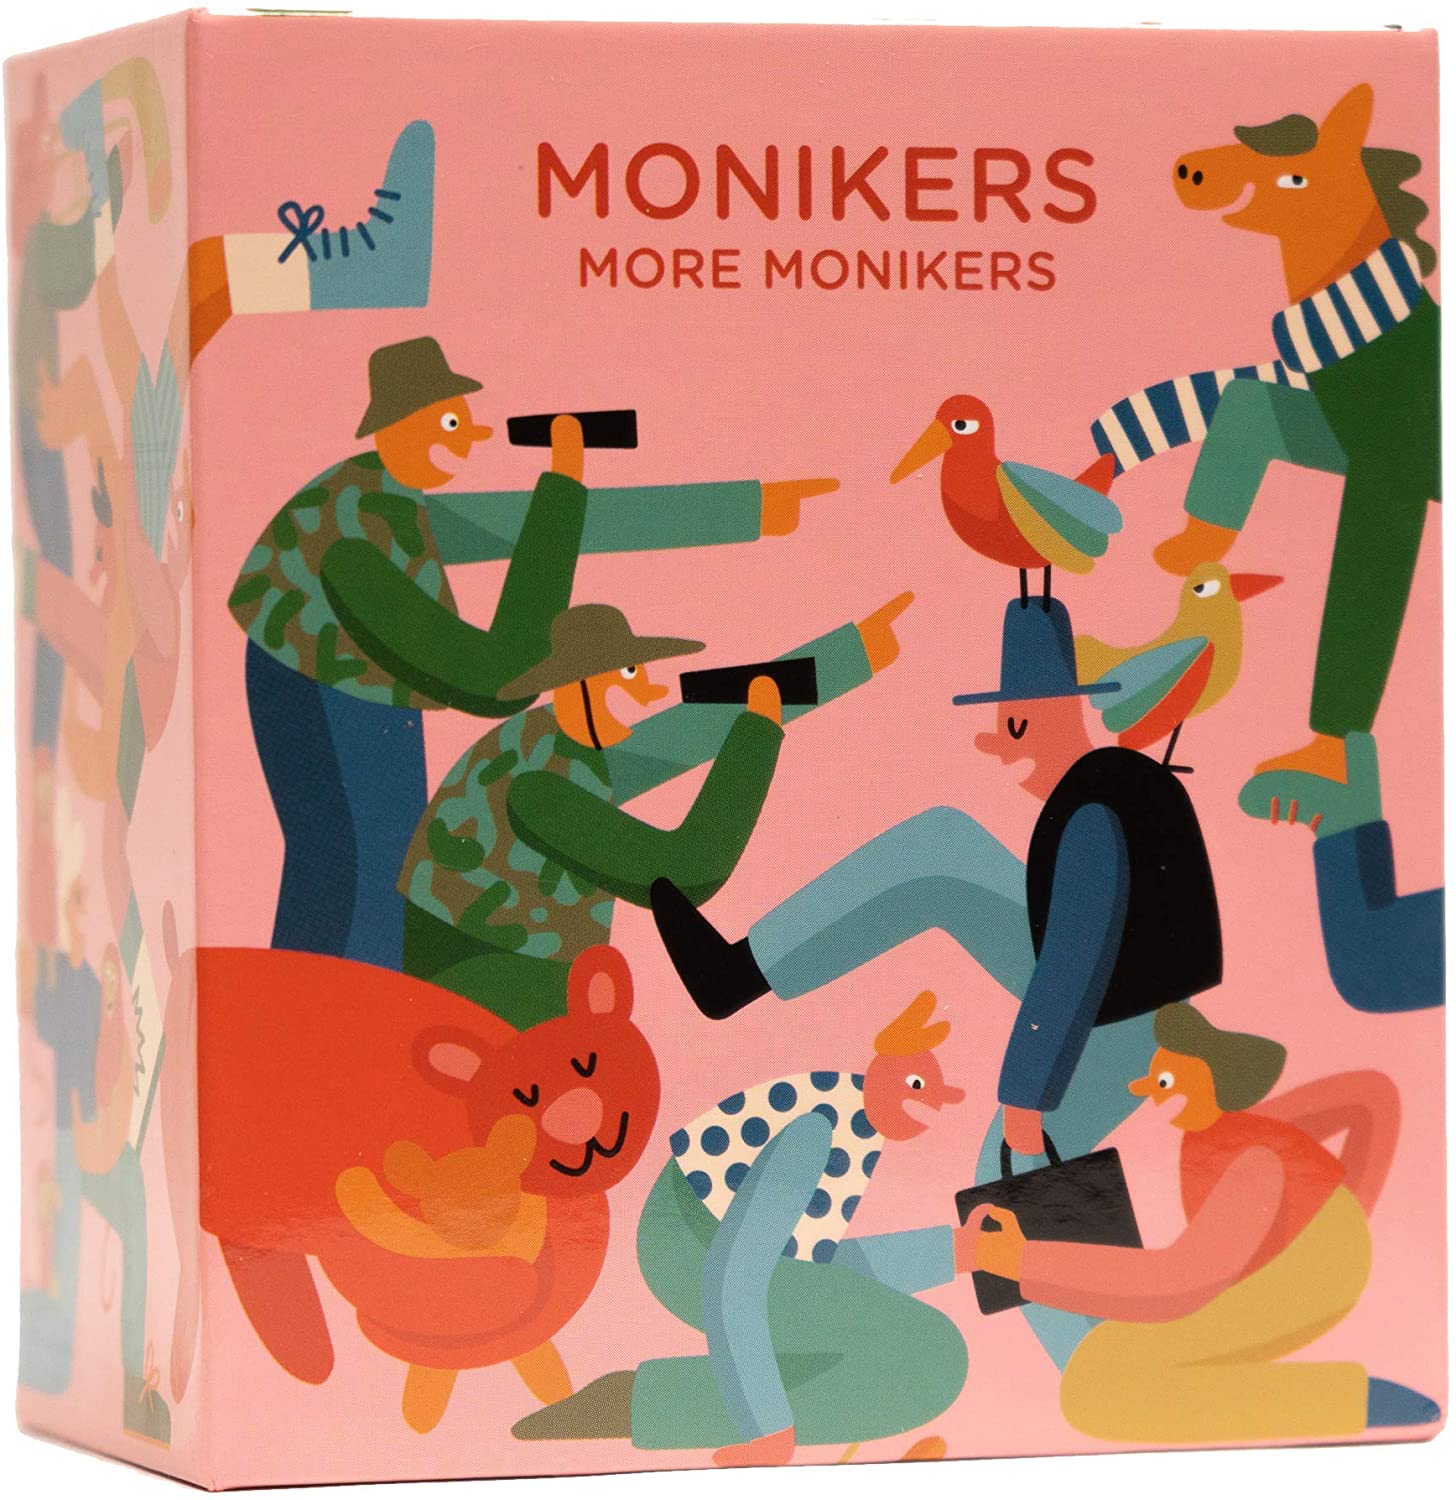 Monikers: More Monikers expansion